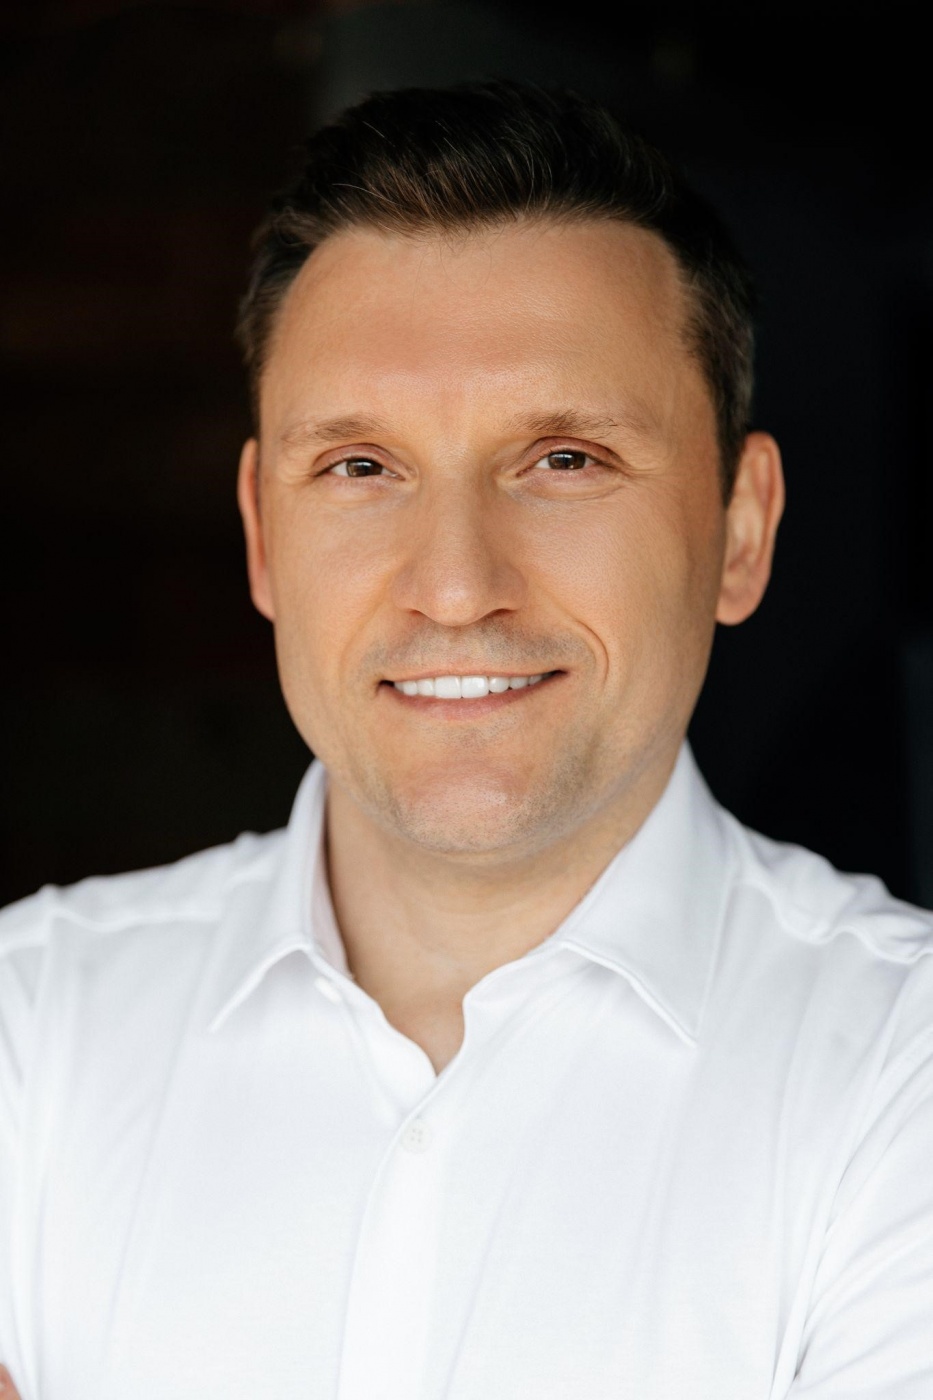 Роман Устименко, керівник Alfa Beauty Group LLC: Україна починається з таких особистостей, як він